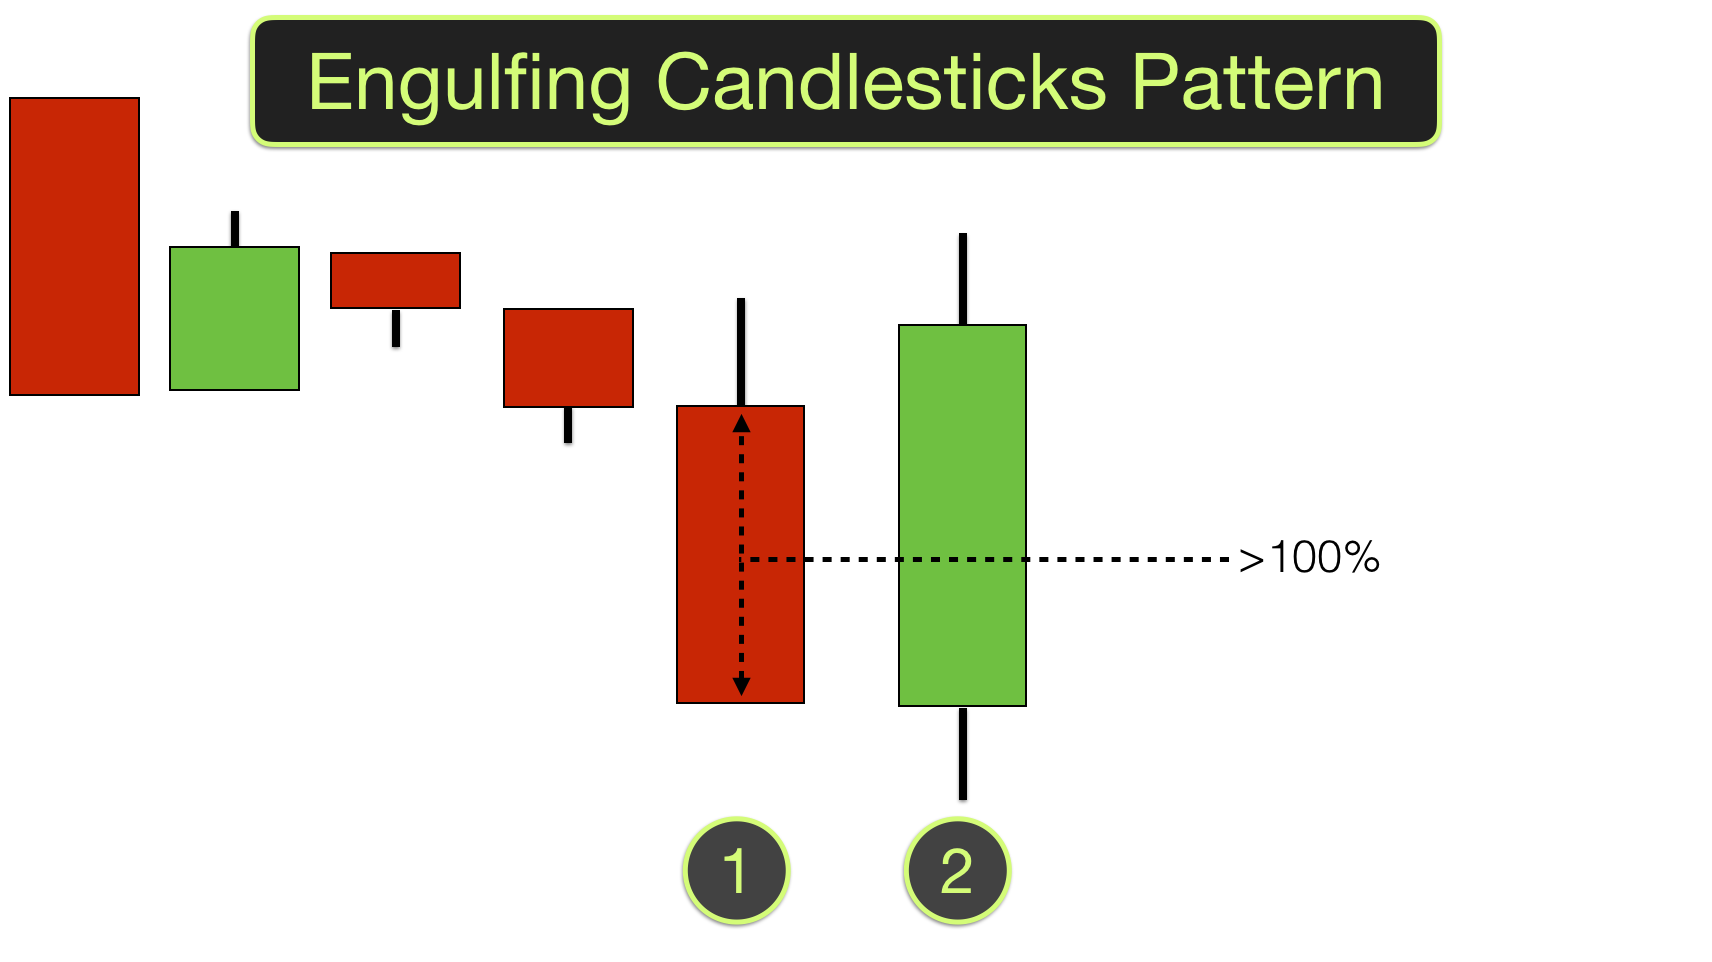 Engulfing Candlesticks